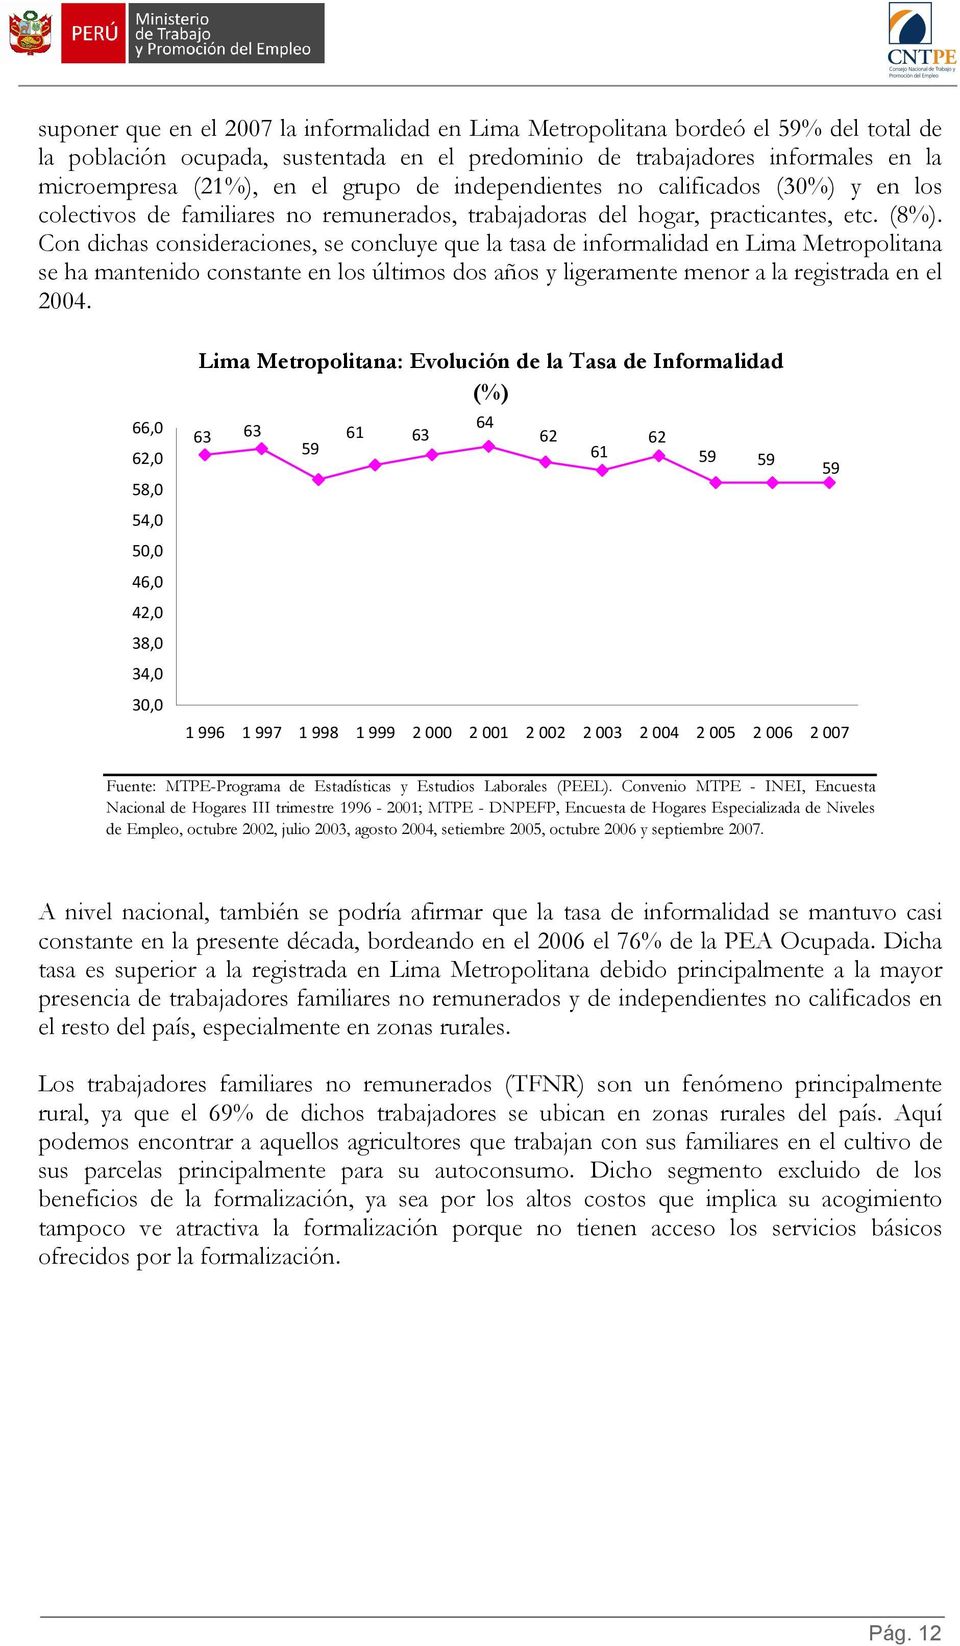 Con dichas consideraciones, se concluye que la tasa de informalidad en Lima Metropolitana se ha mantenido constante en los últimos dos años y ligeramente menor a la registrada en el 2004.